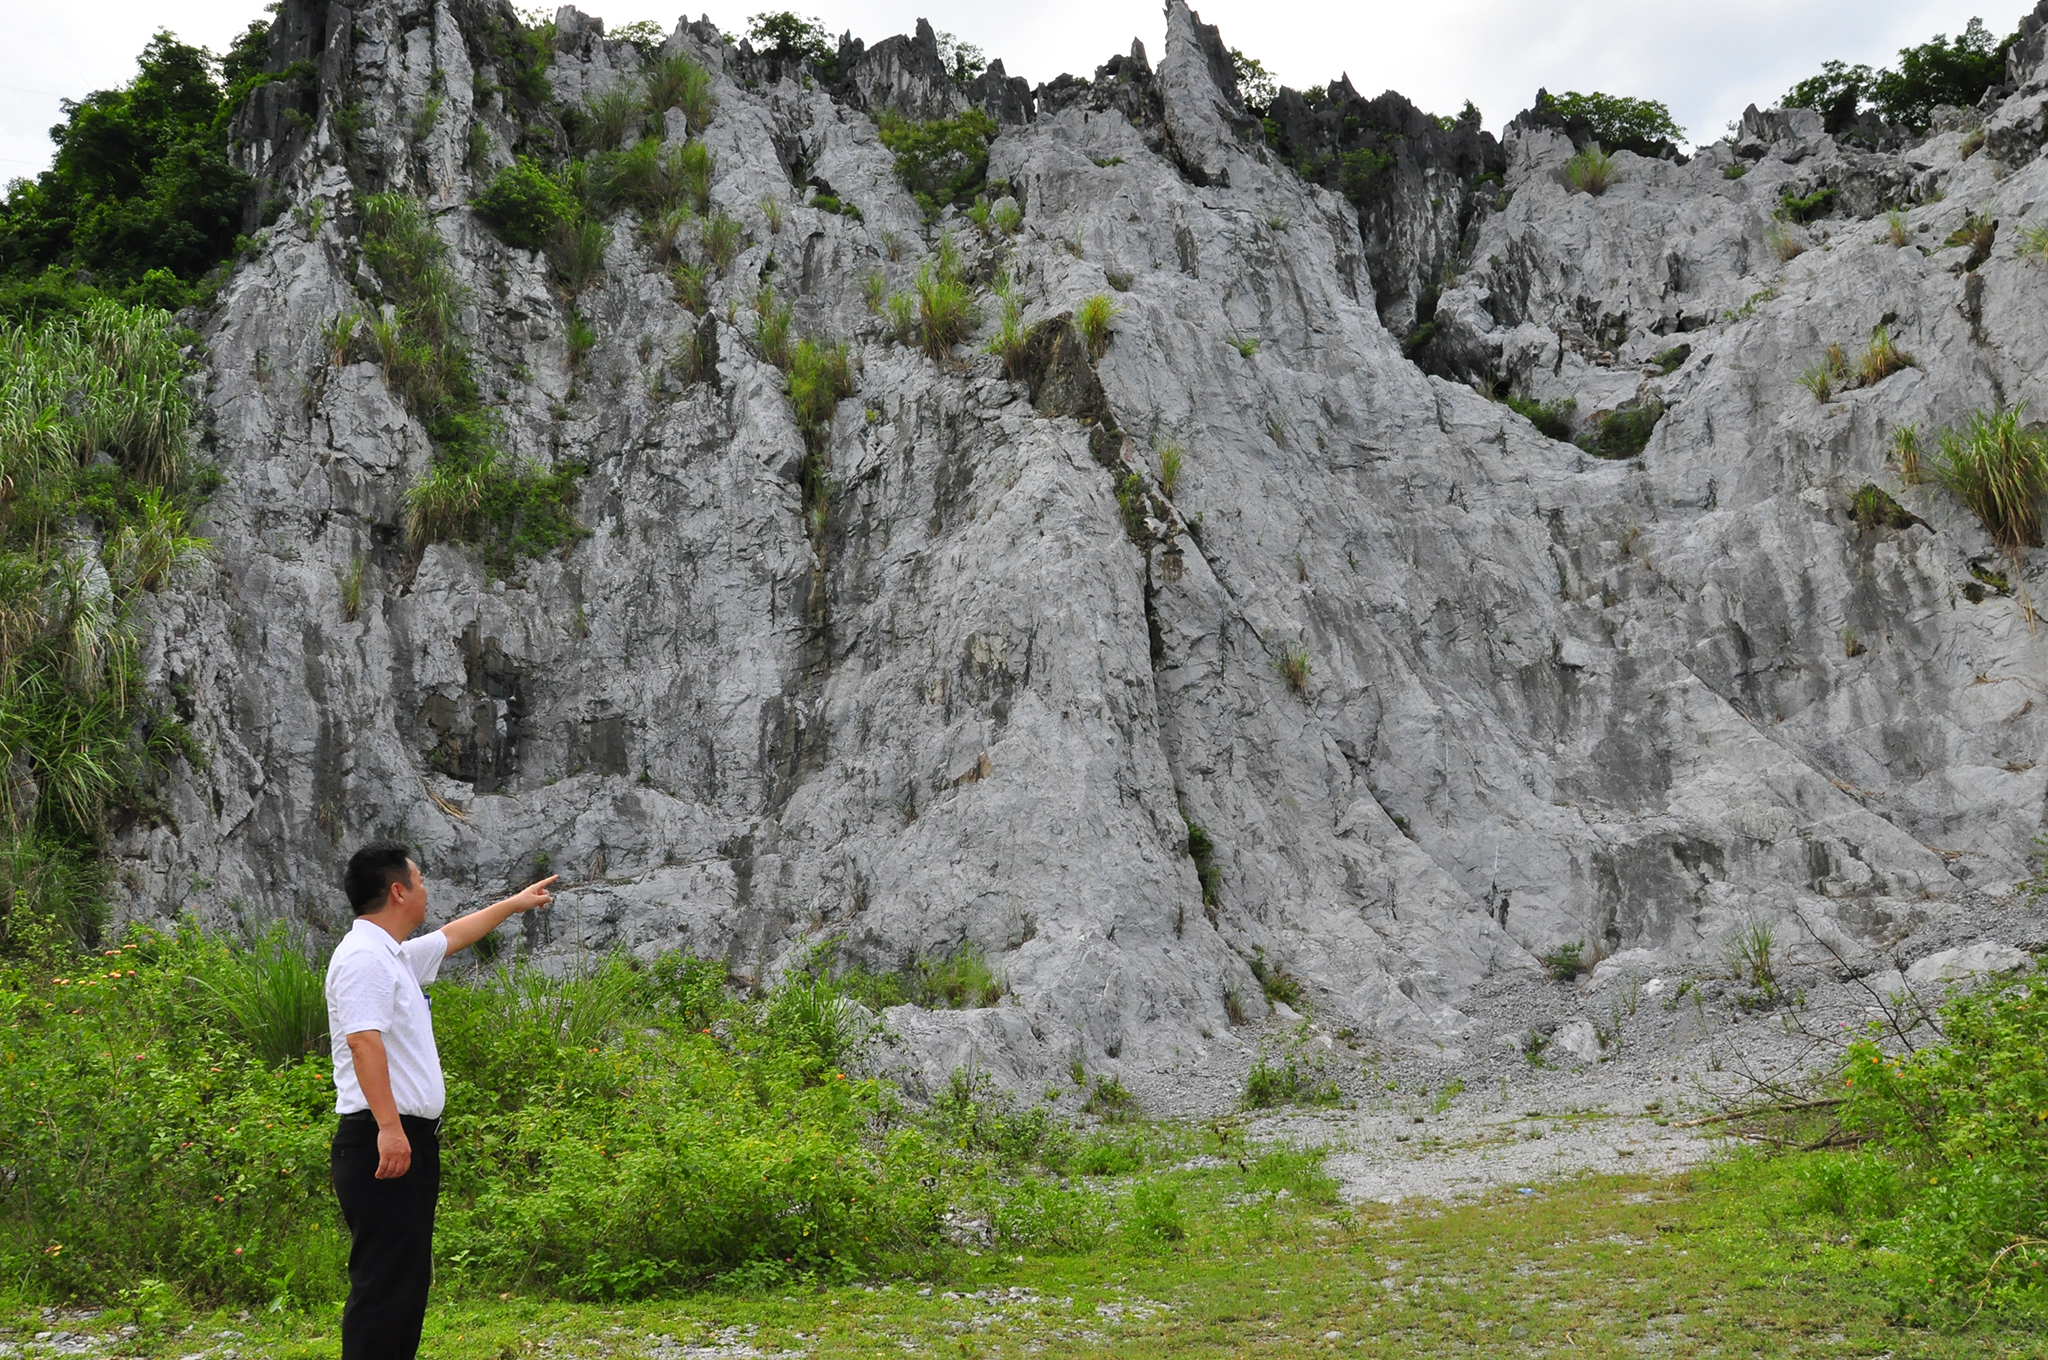 Khu vực núi đá quanh di tích Hang Hoả Tiễn bị khai thác nham nhở.